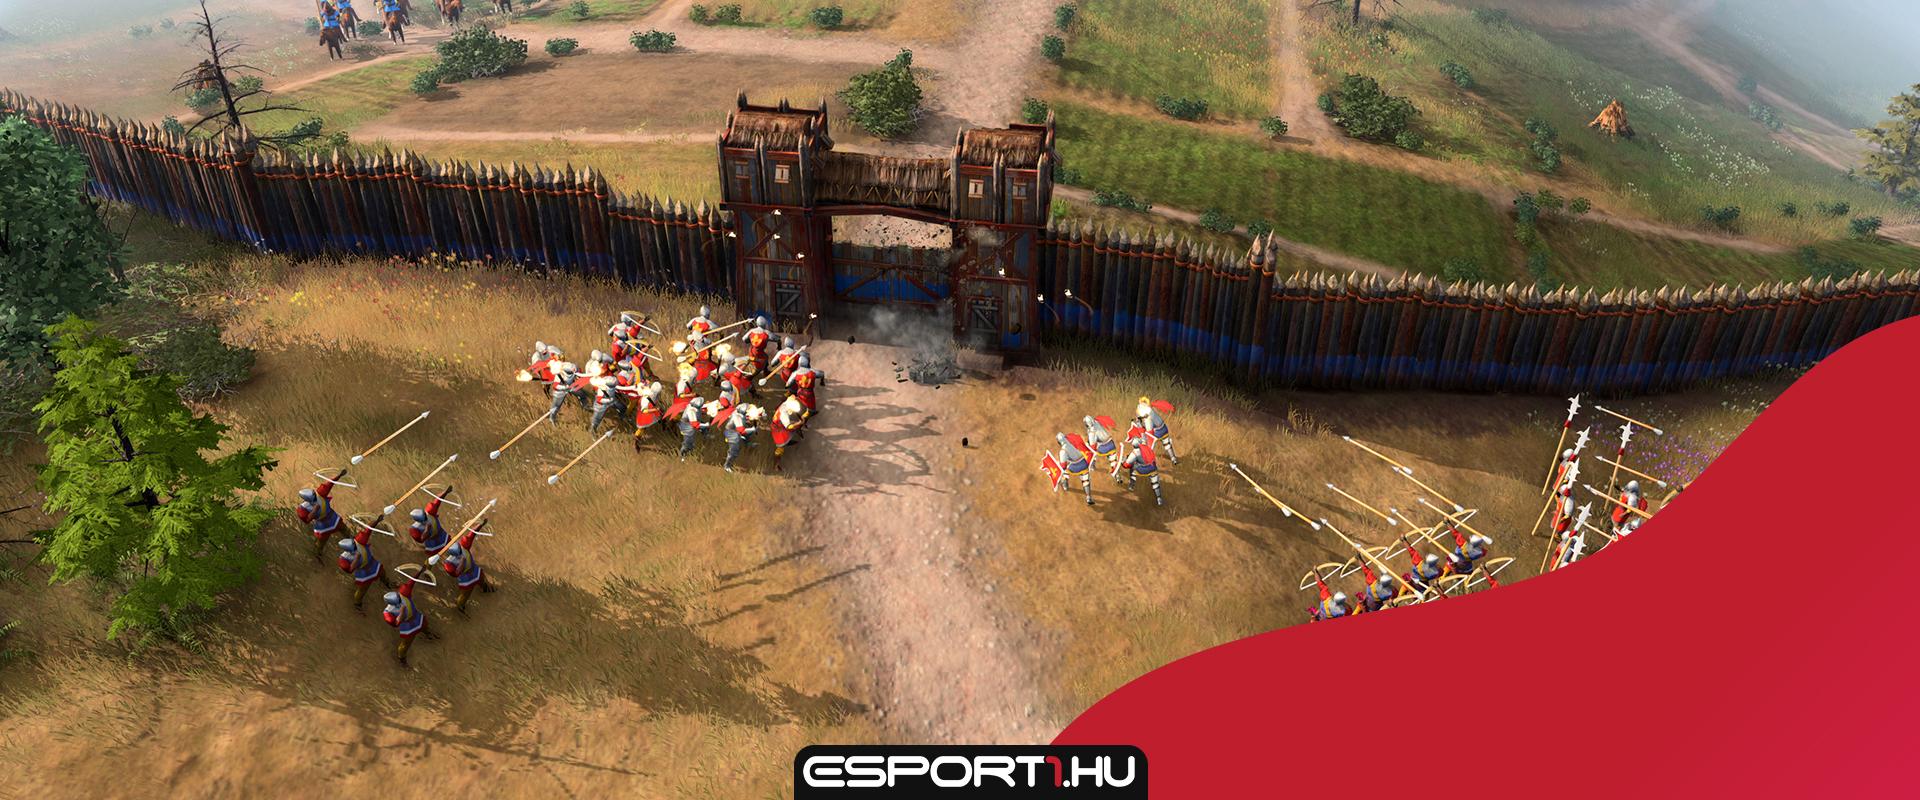 Publikálta az Age of Empires 4 teljes gépigényét a Microsoft